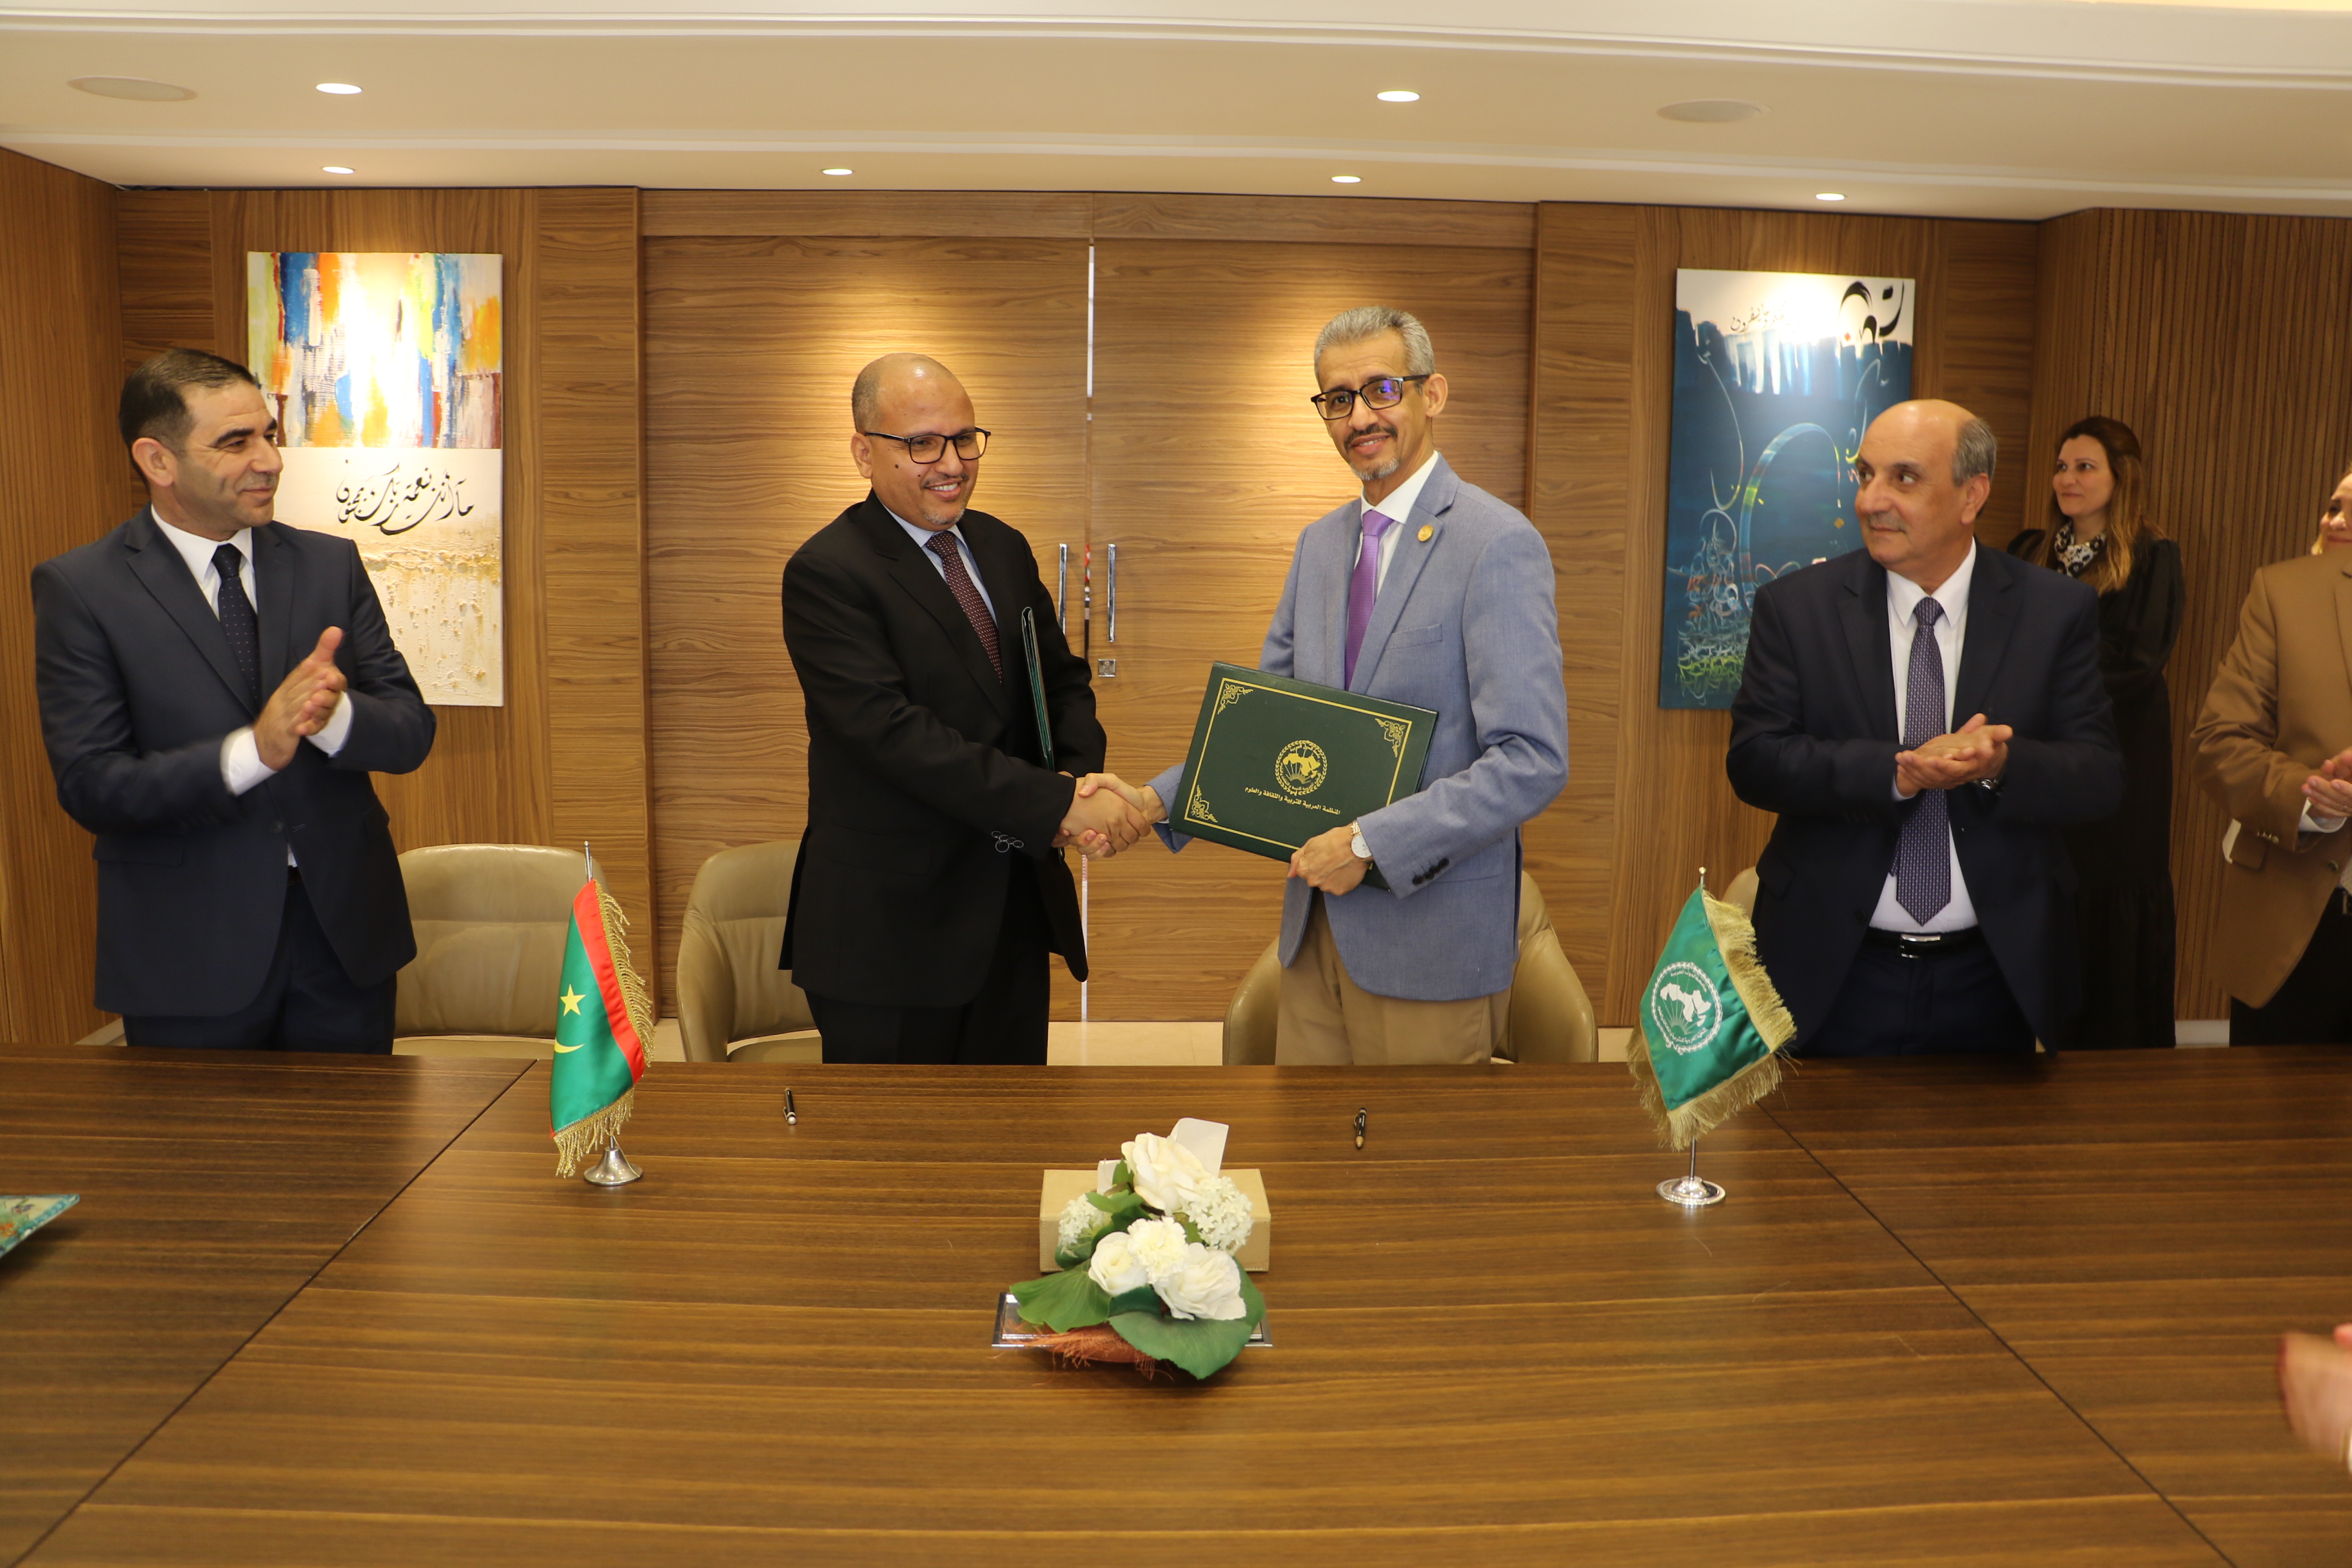 معالي المدير العام يوقع اتفاقية تعاون مع رئيس جامعة العلوم الإسلامية بلعيون بالجمهورية الإسلامية الموريتانية